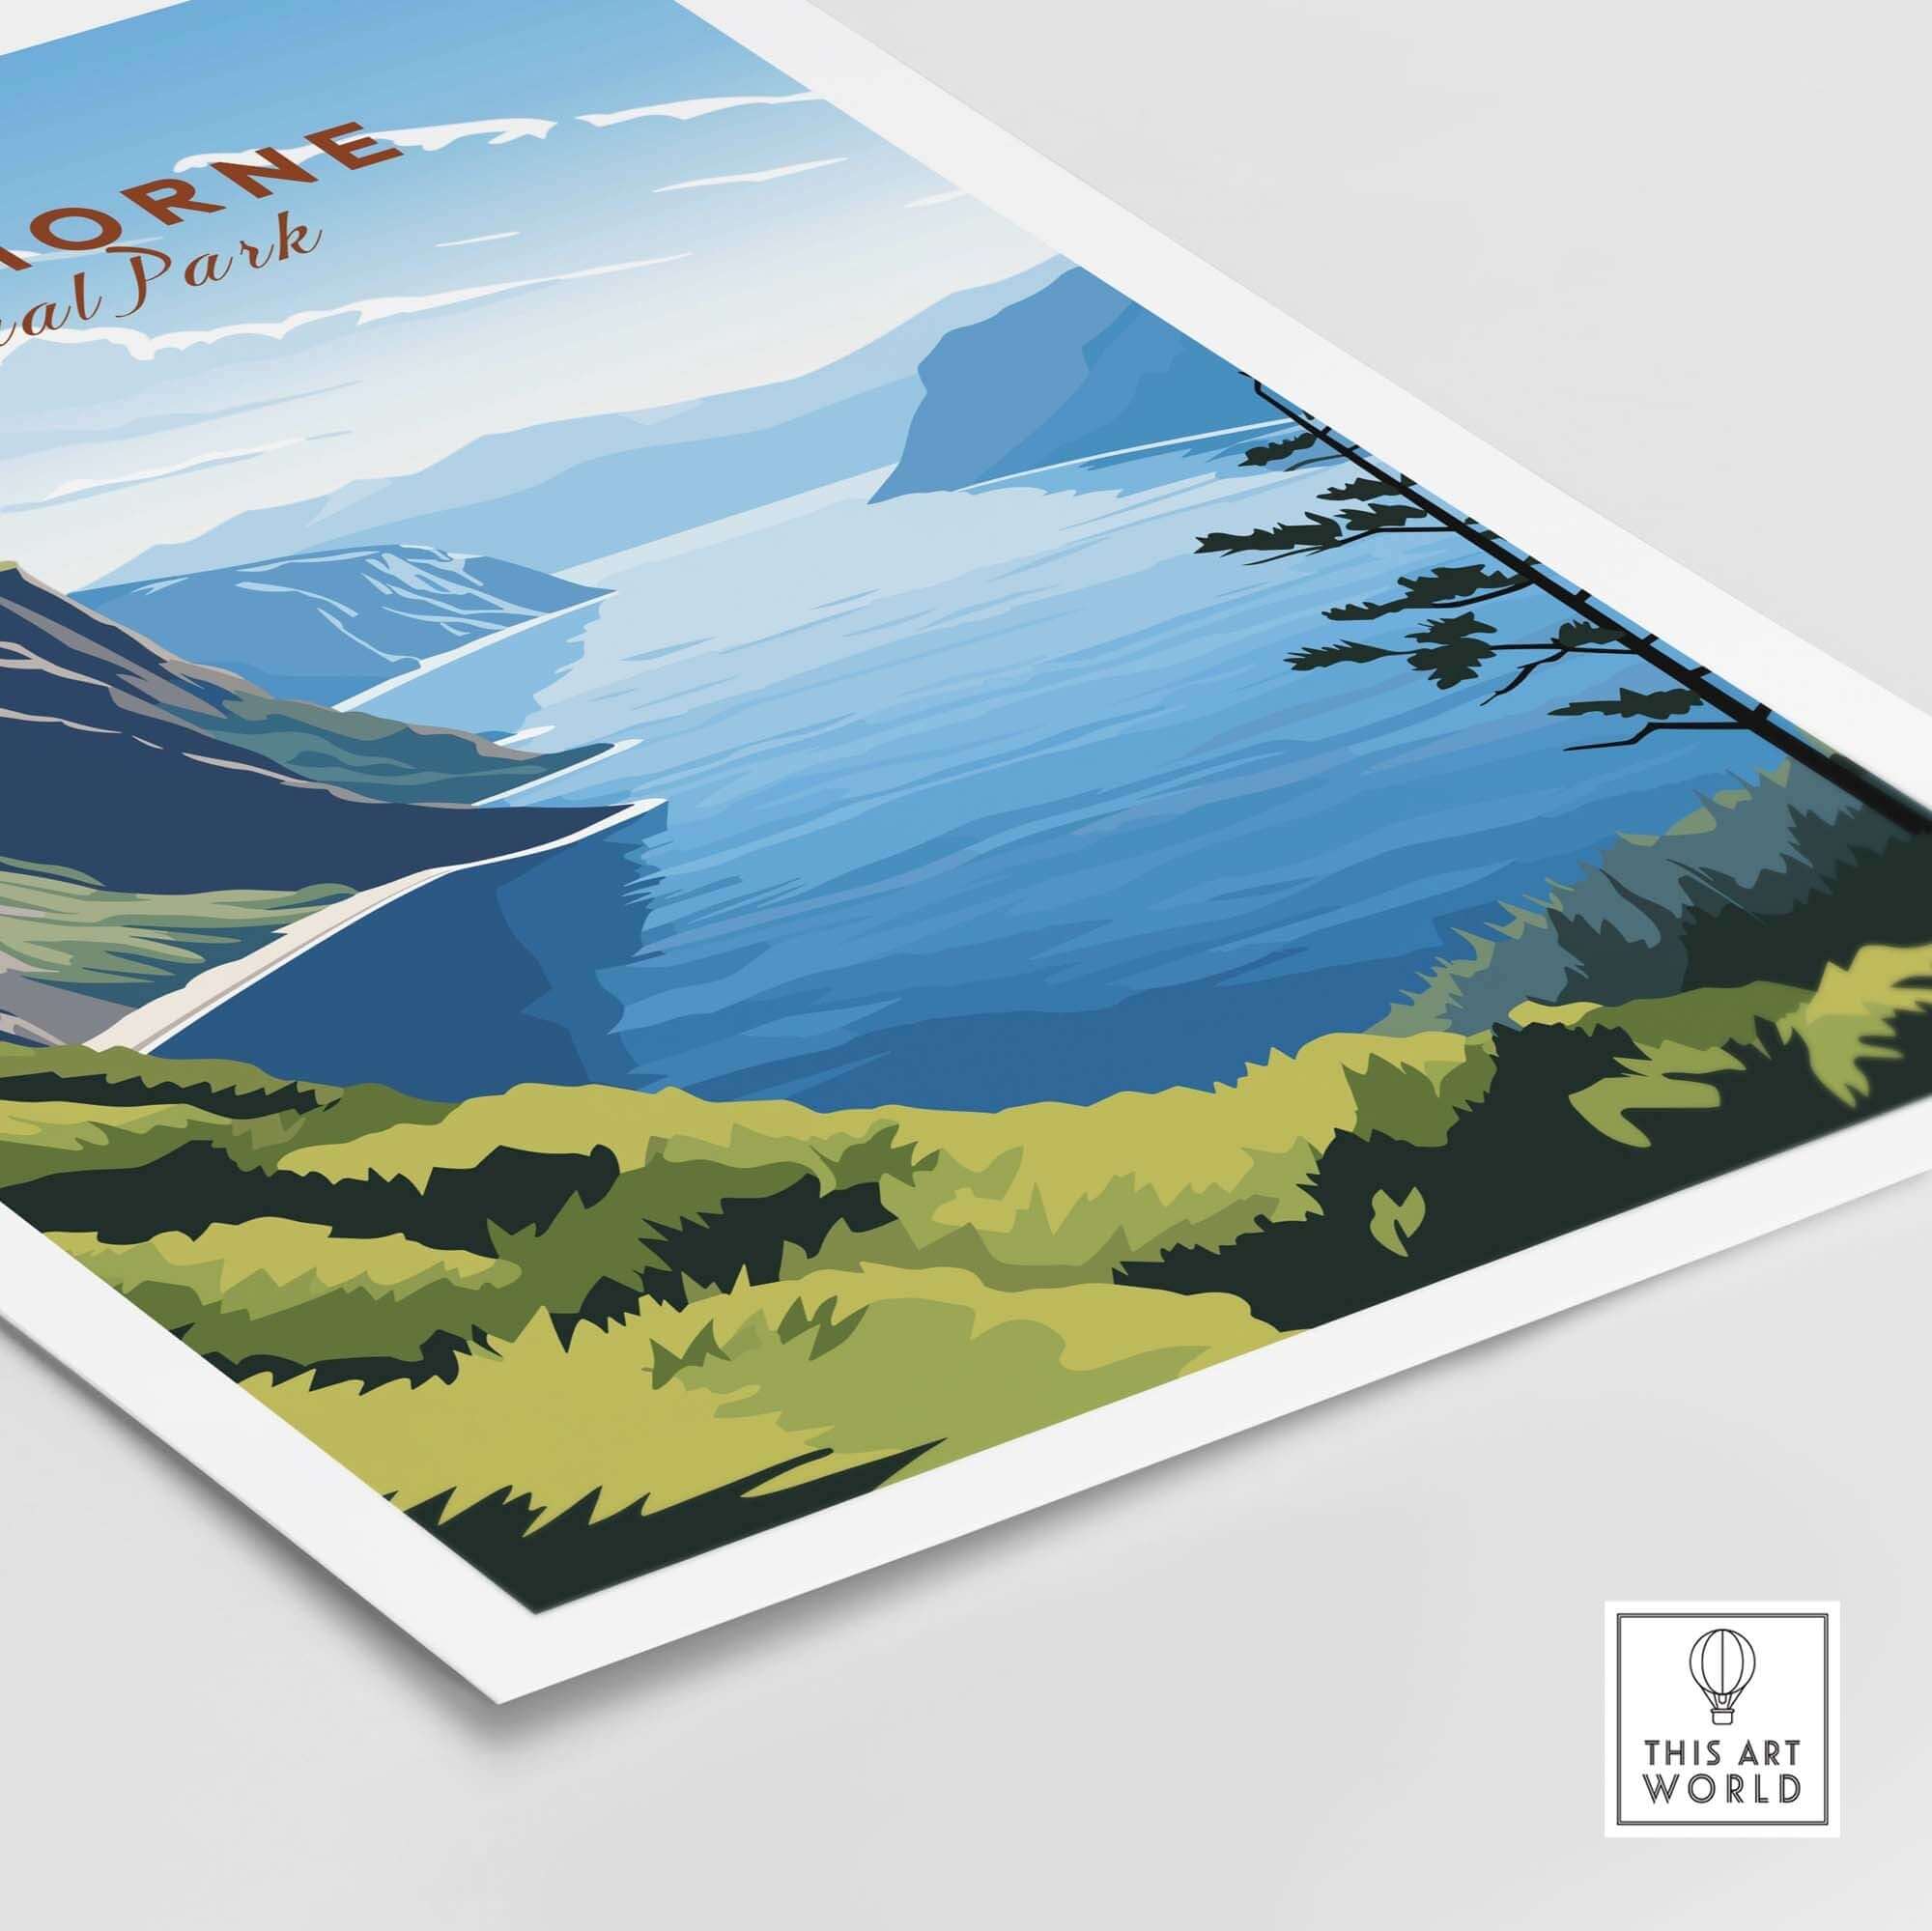 Gros Morne Poster National Park